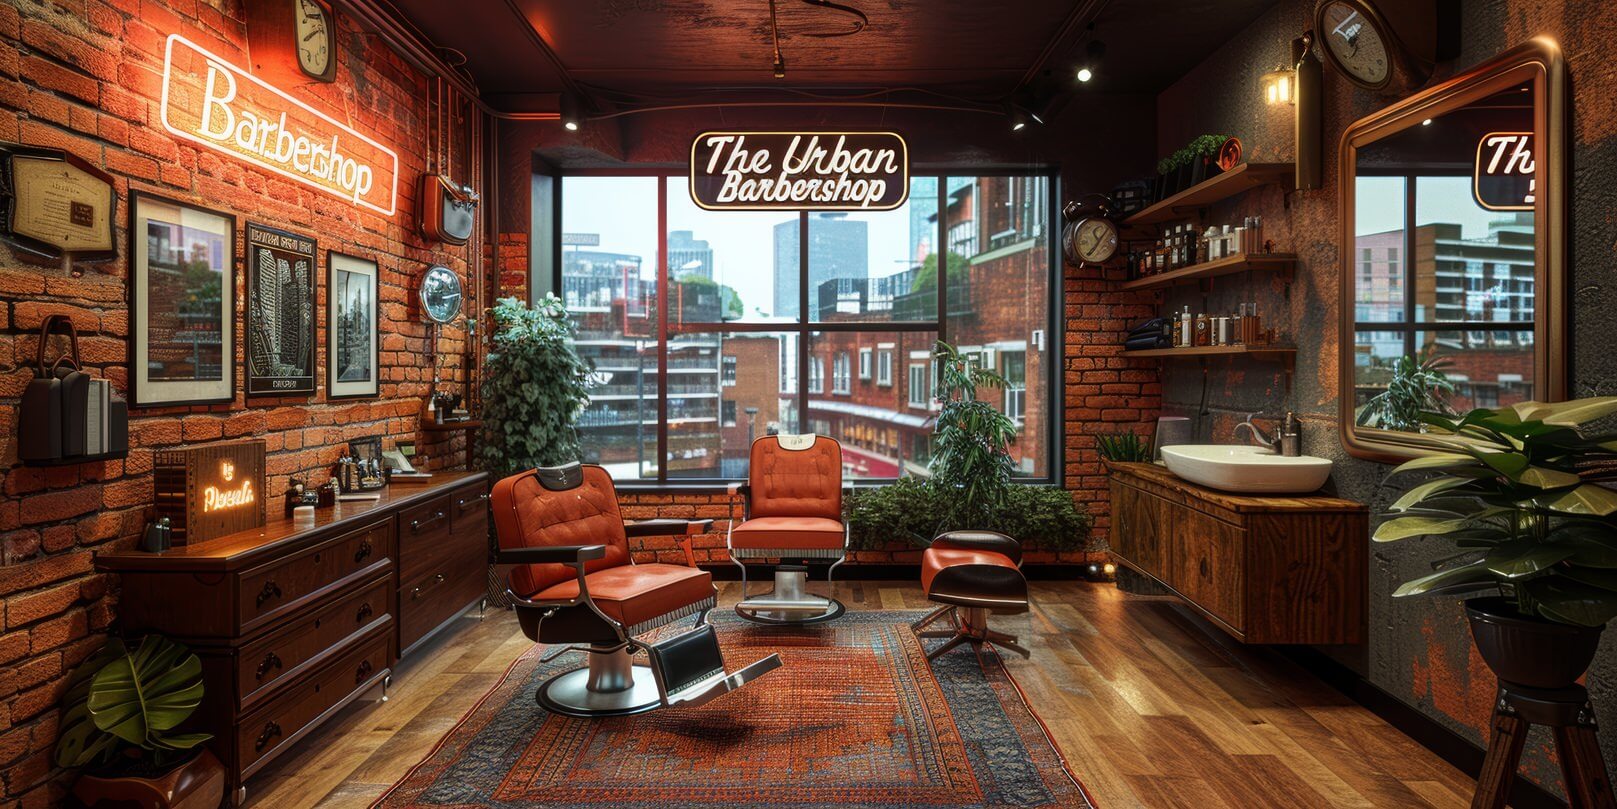 The Urban Barbershop